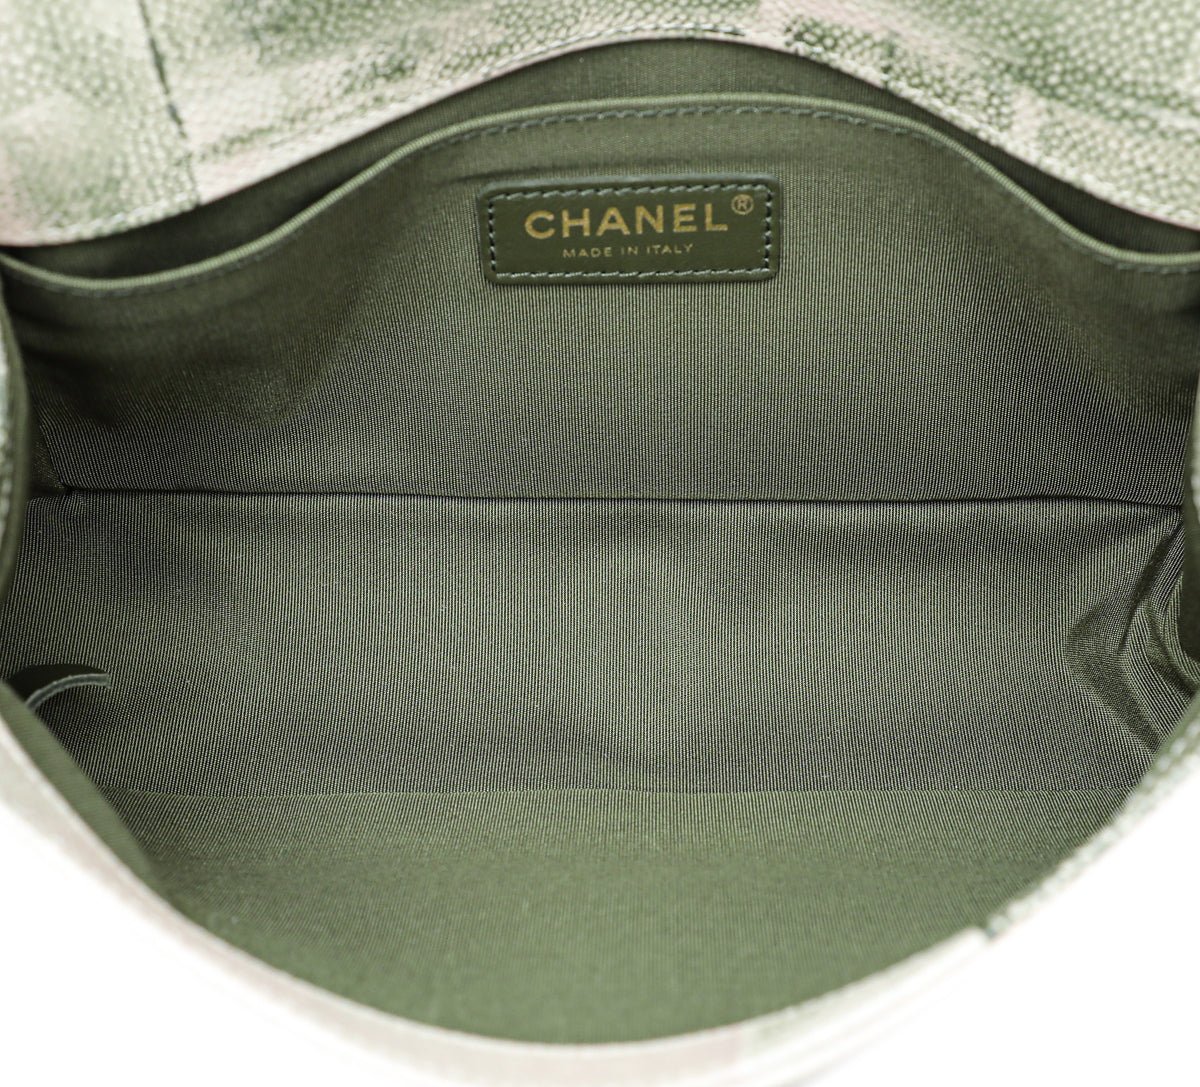 Chanel - Chanel Bicolor Le Boy Cuba Painted Medium Flap Bag | The Closet